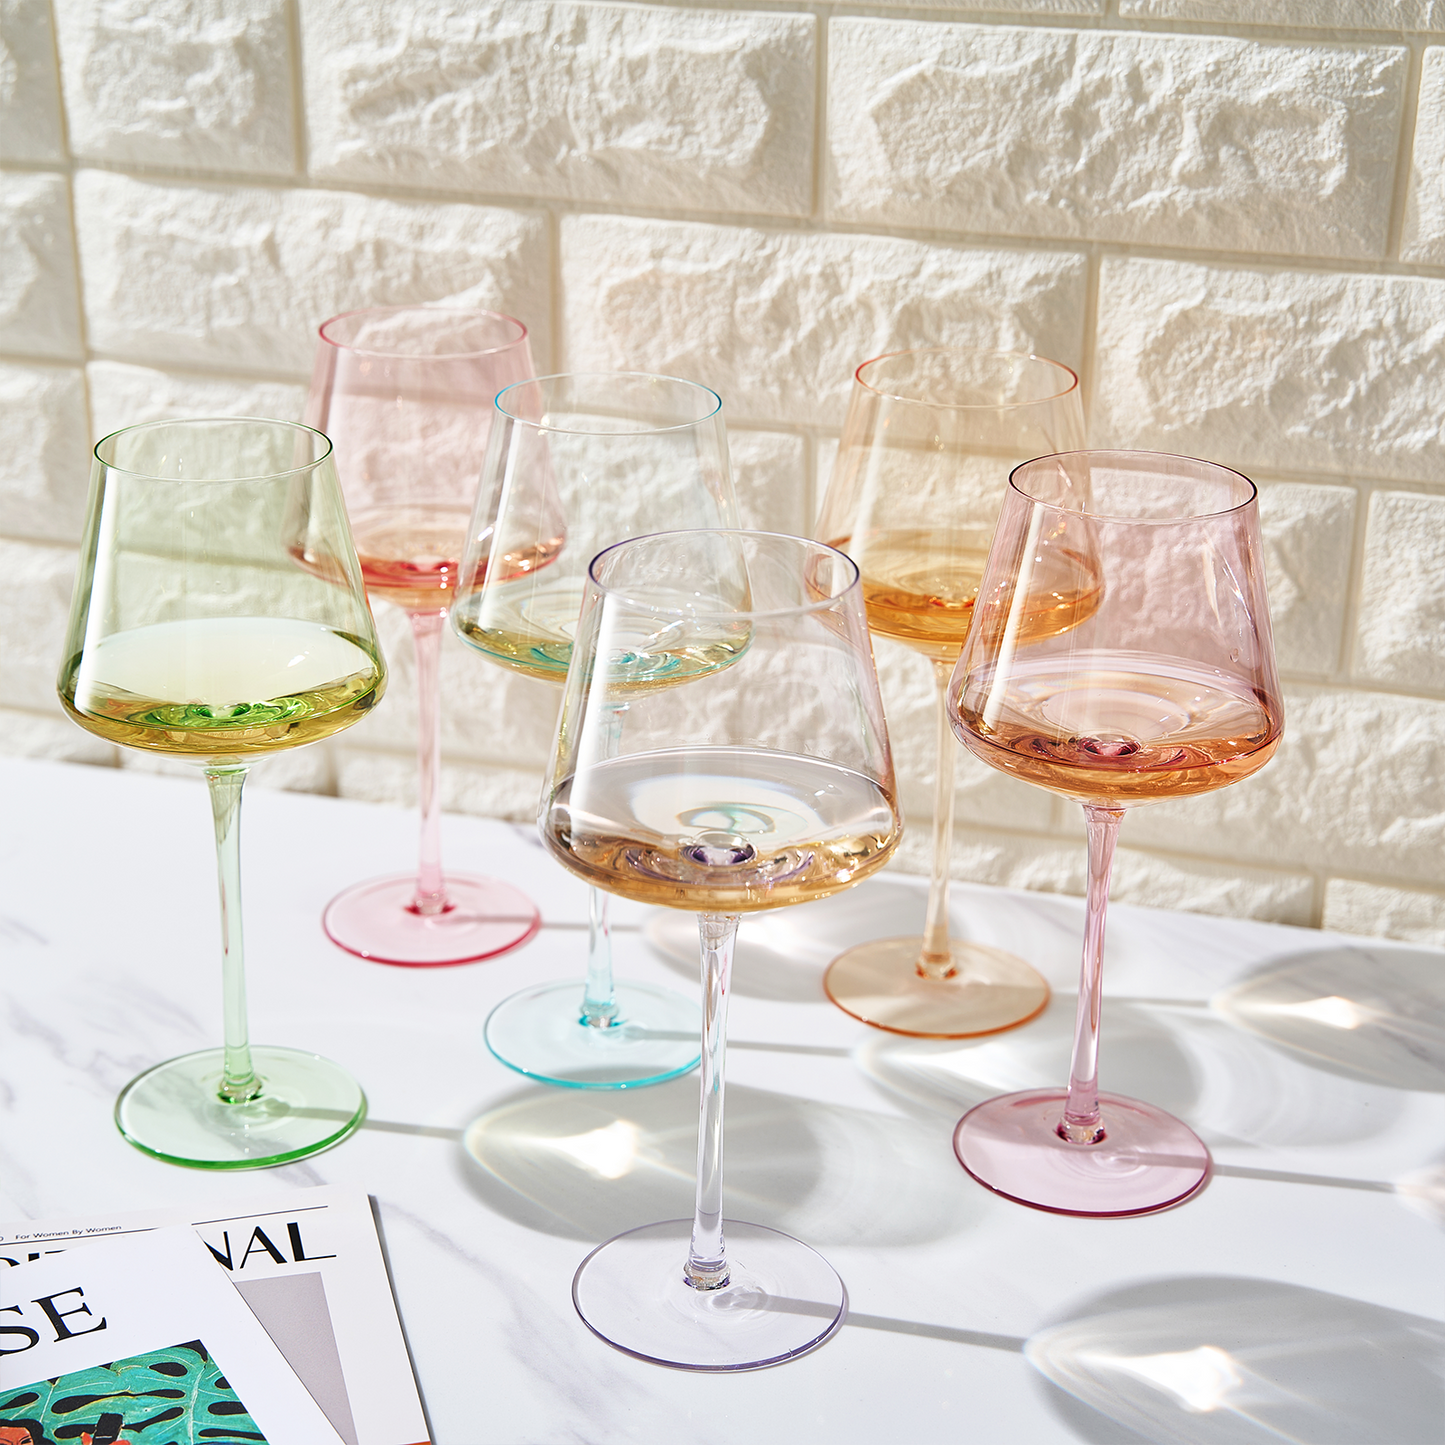 Monet Wine Glassware, Set of 6